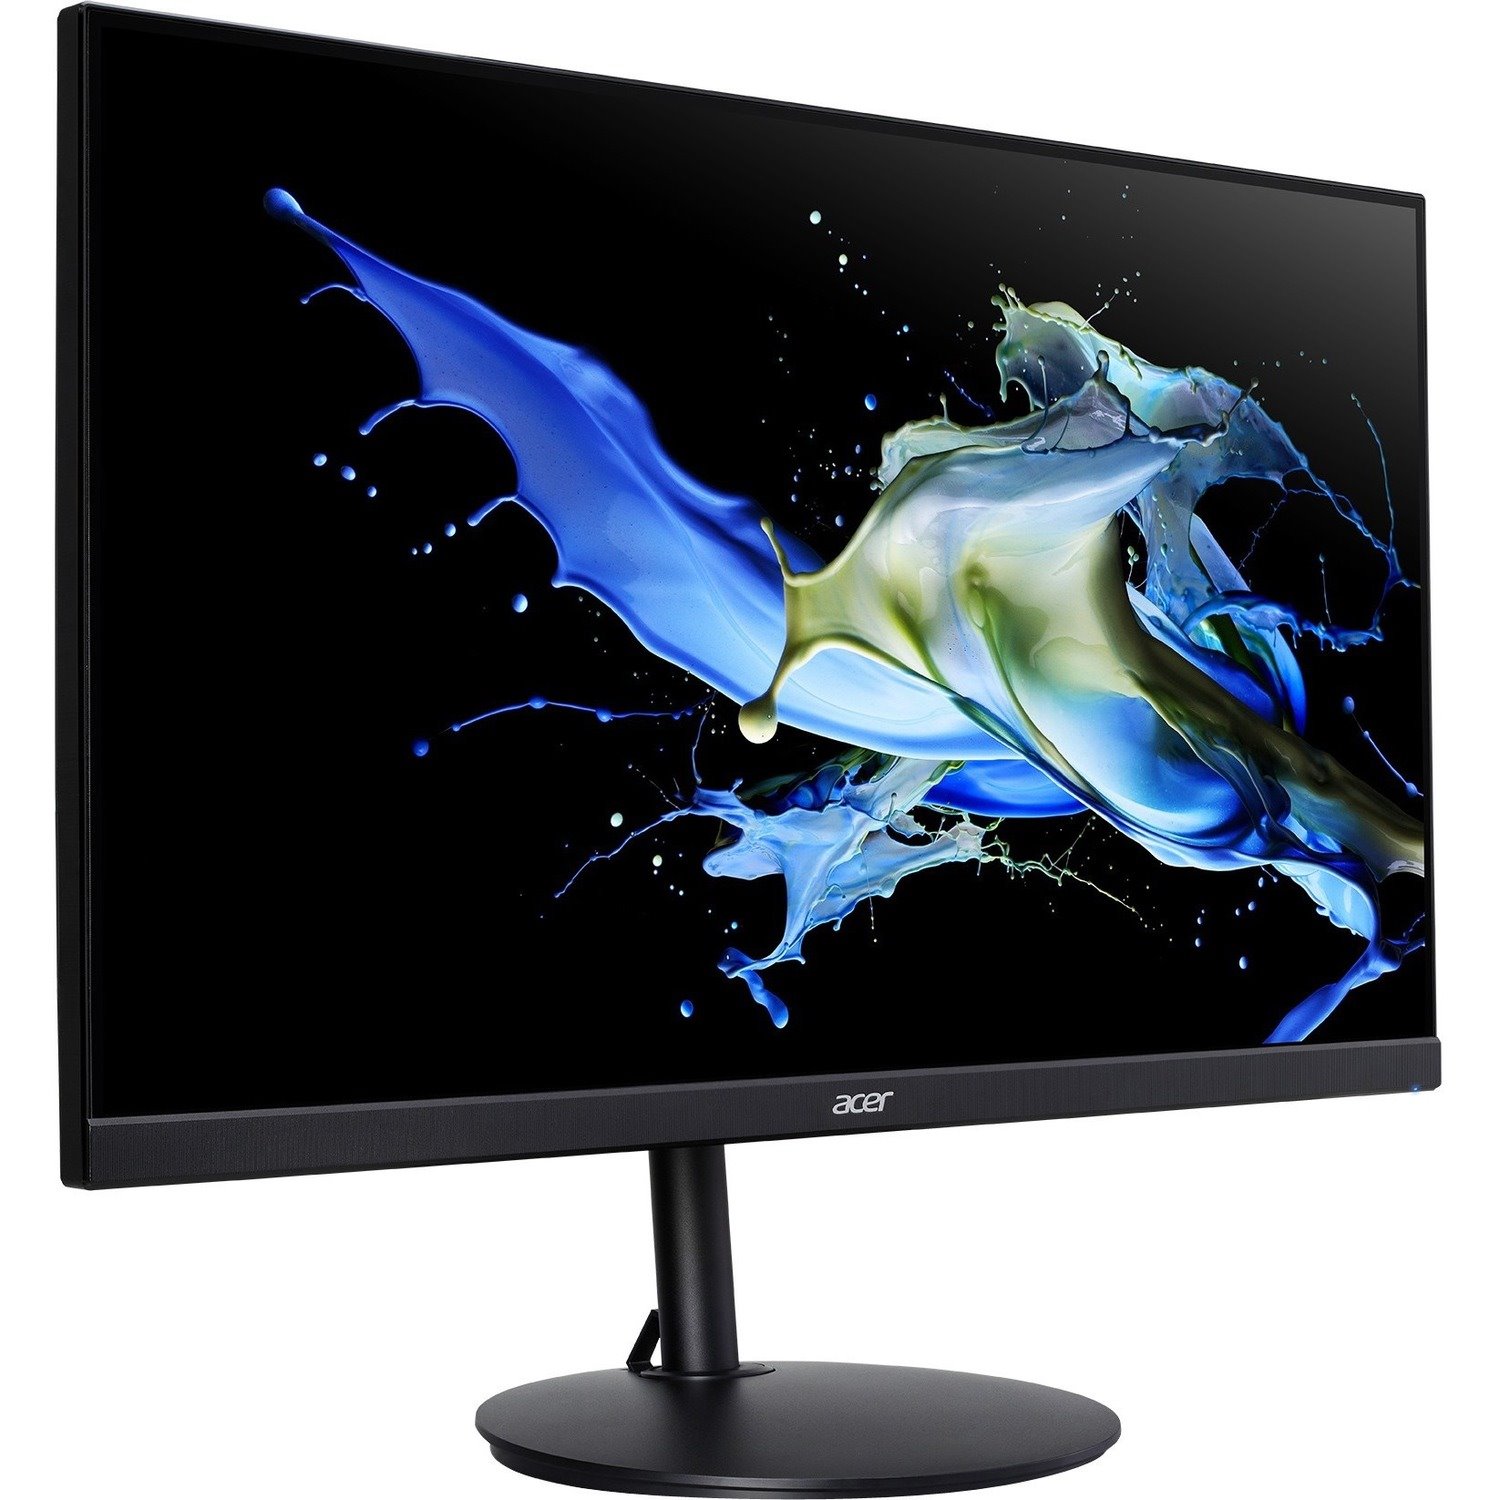 Acer CB272 27" Full HD LED LCD Monitor - 16:9 - Black